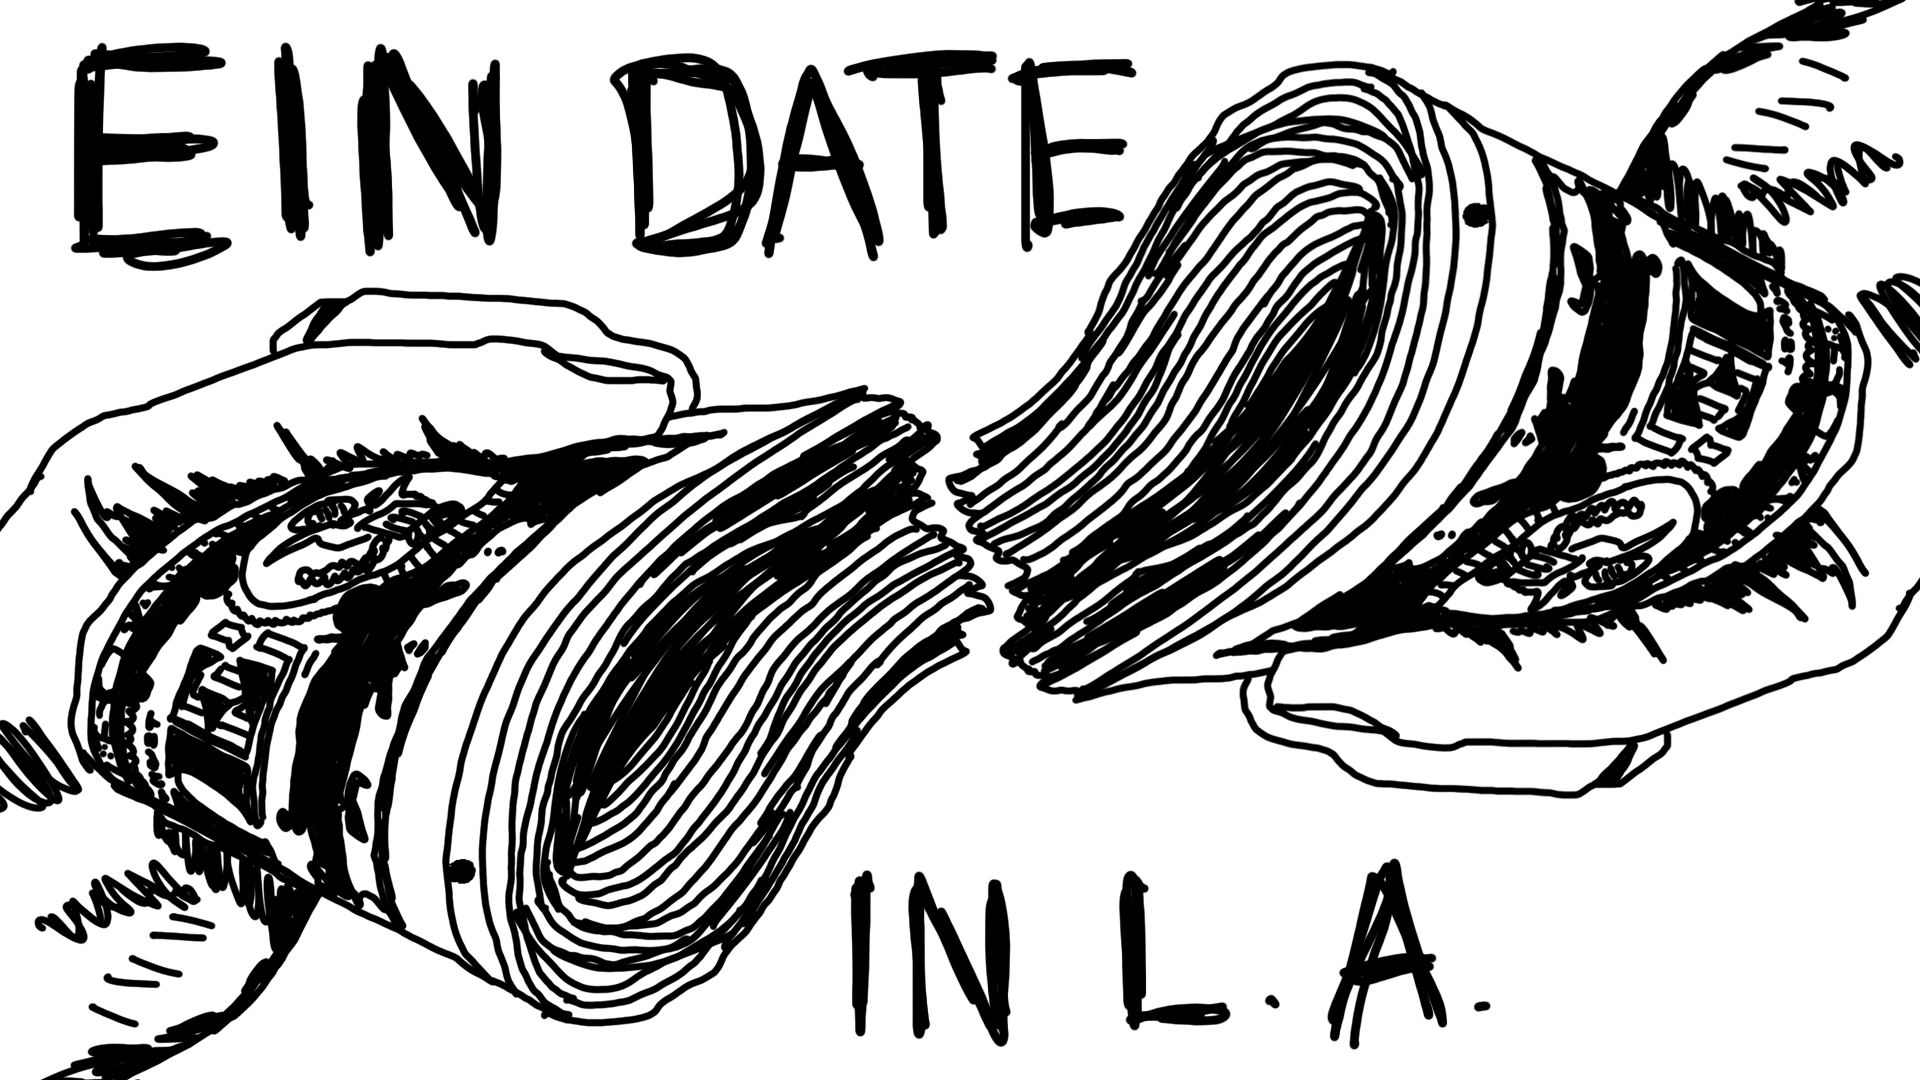 EIN DATE IN LOS ANGELES